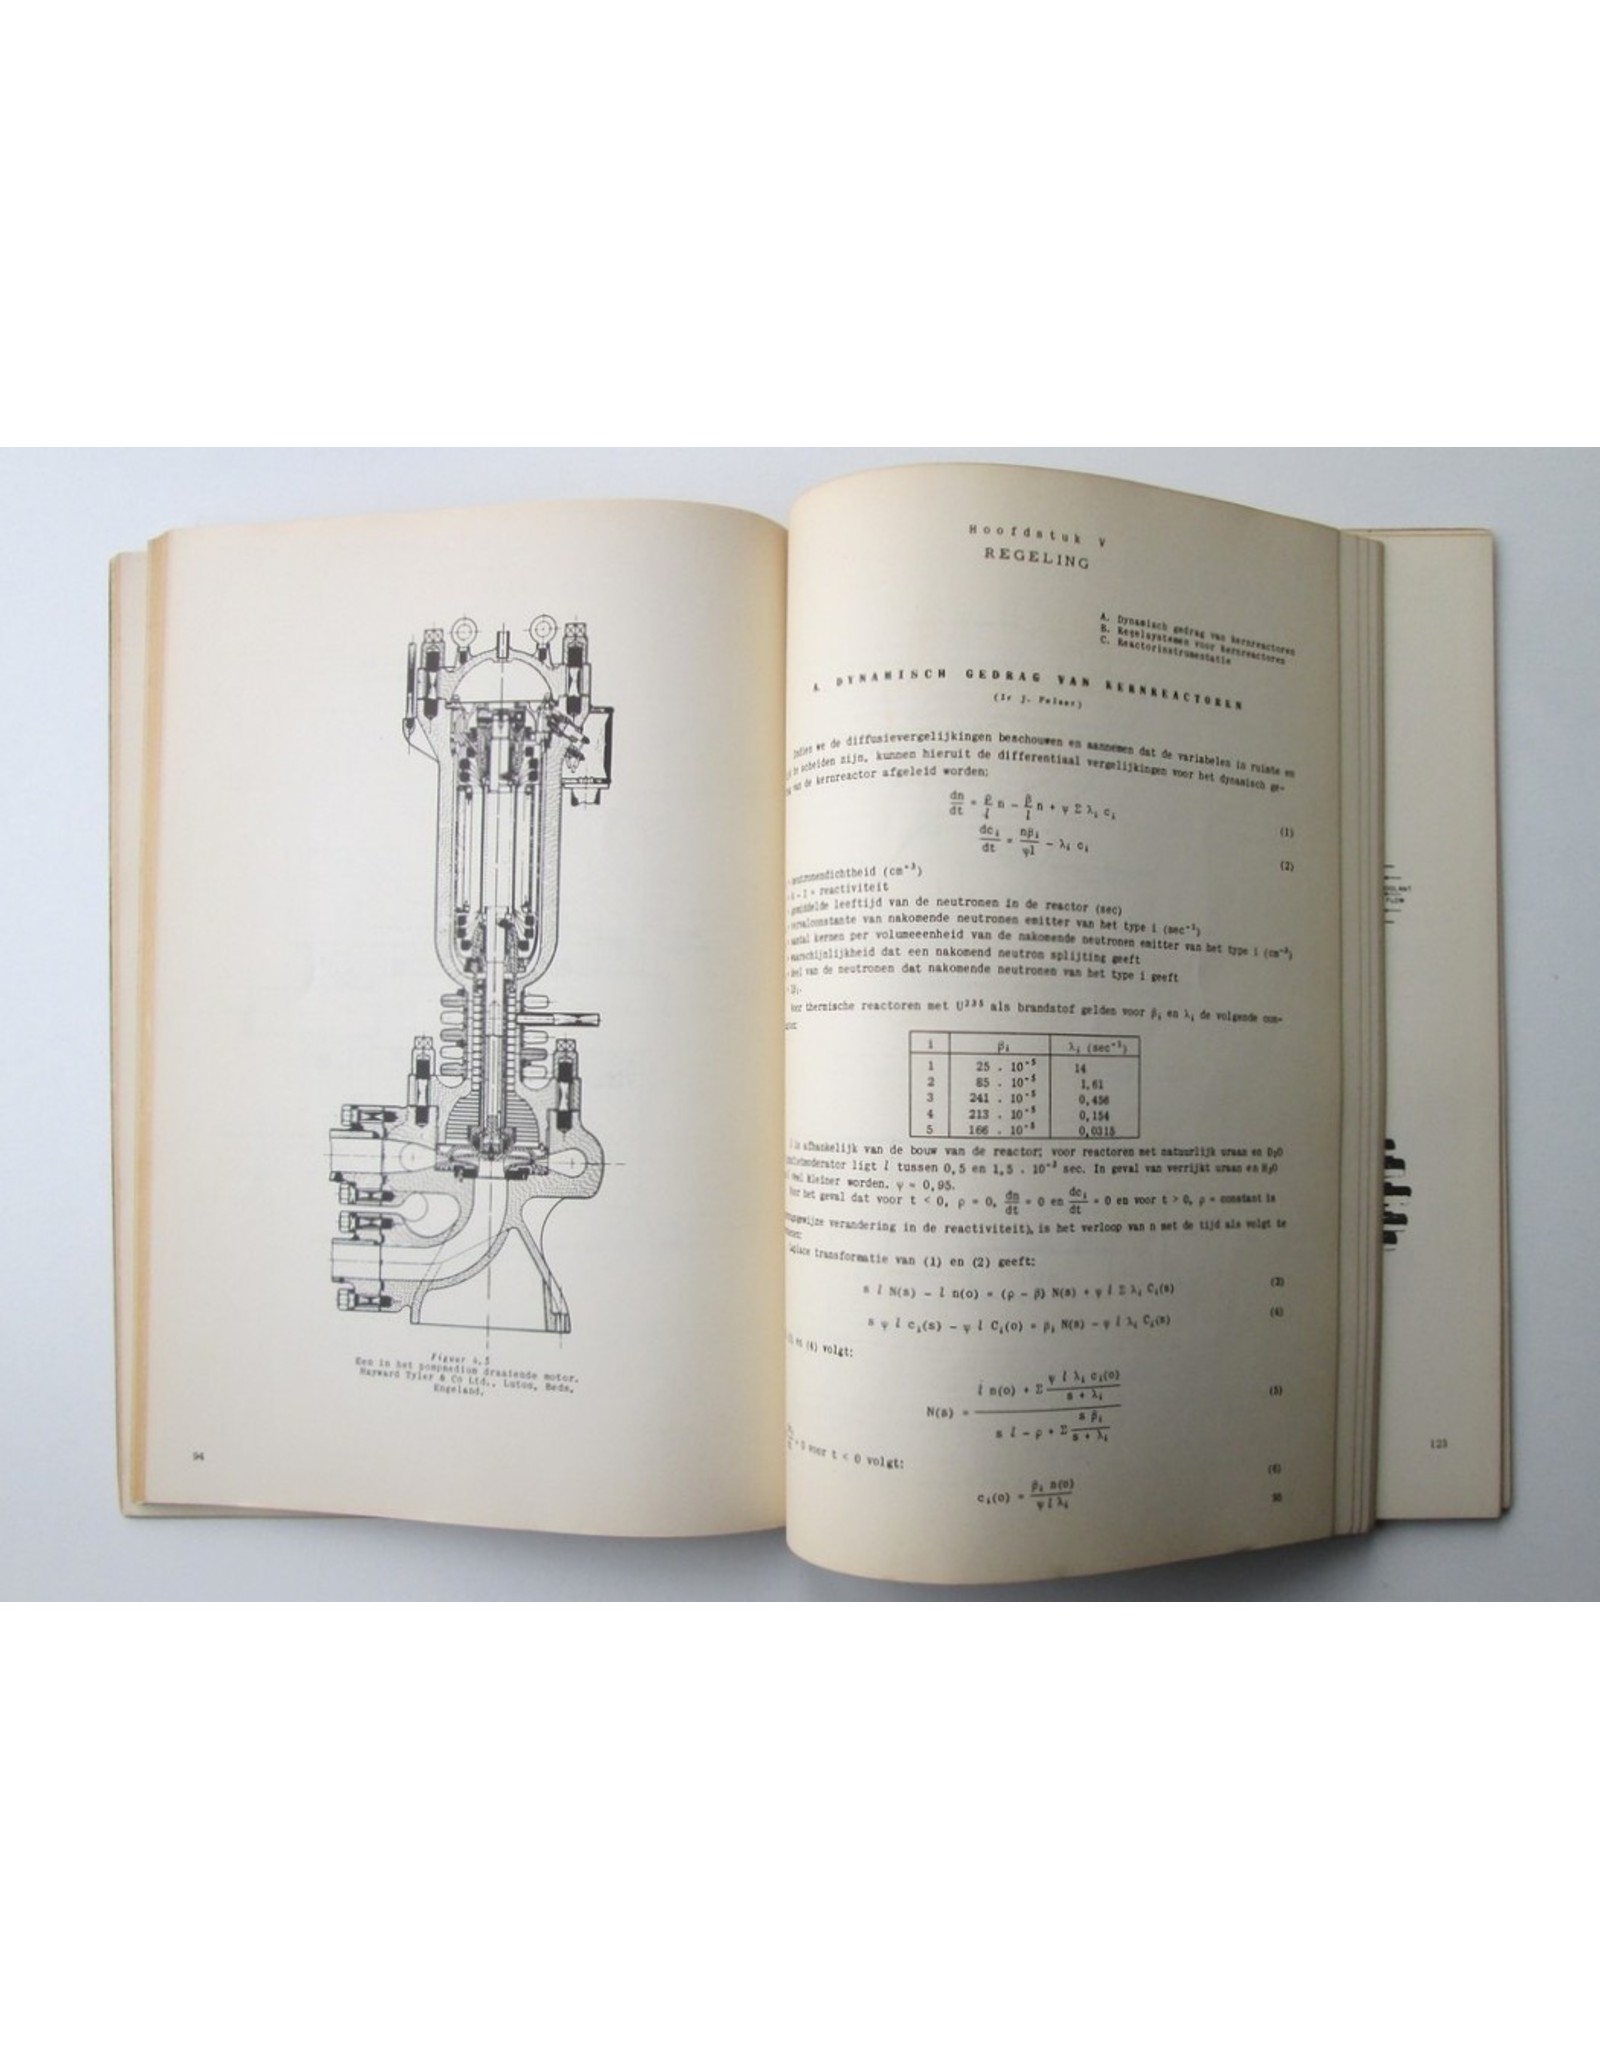 J. de Jong - Technologie en constructie van kernreactoren. Verslag van de leergang 1955